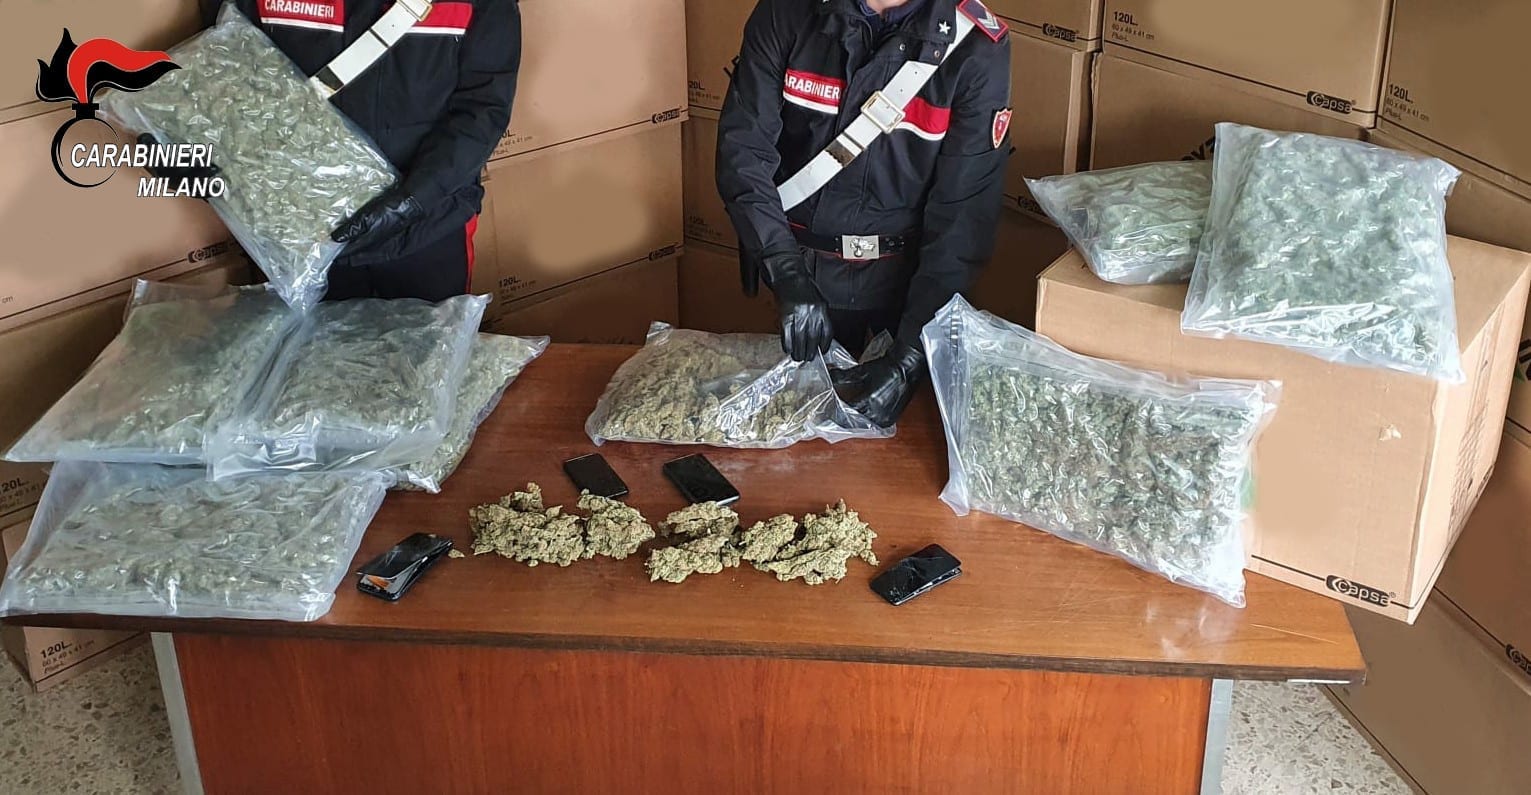 Montagna di droga trovata a Misinto: 5 arresti